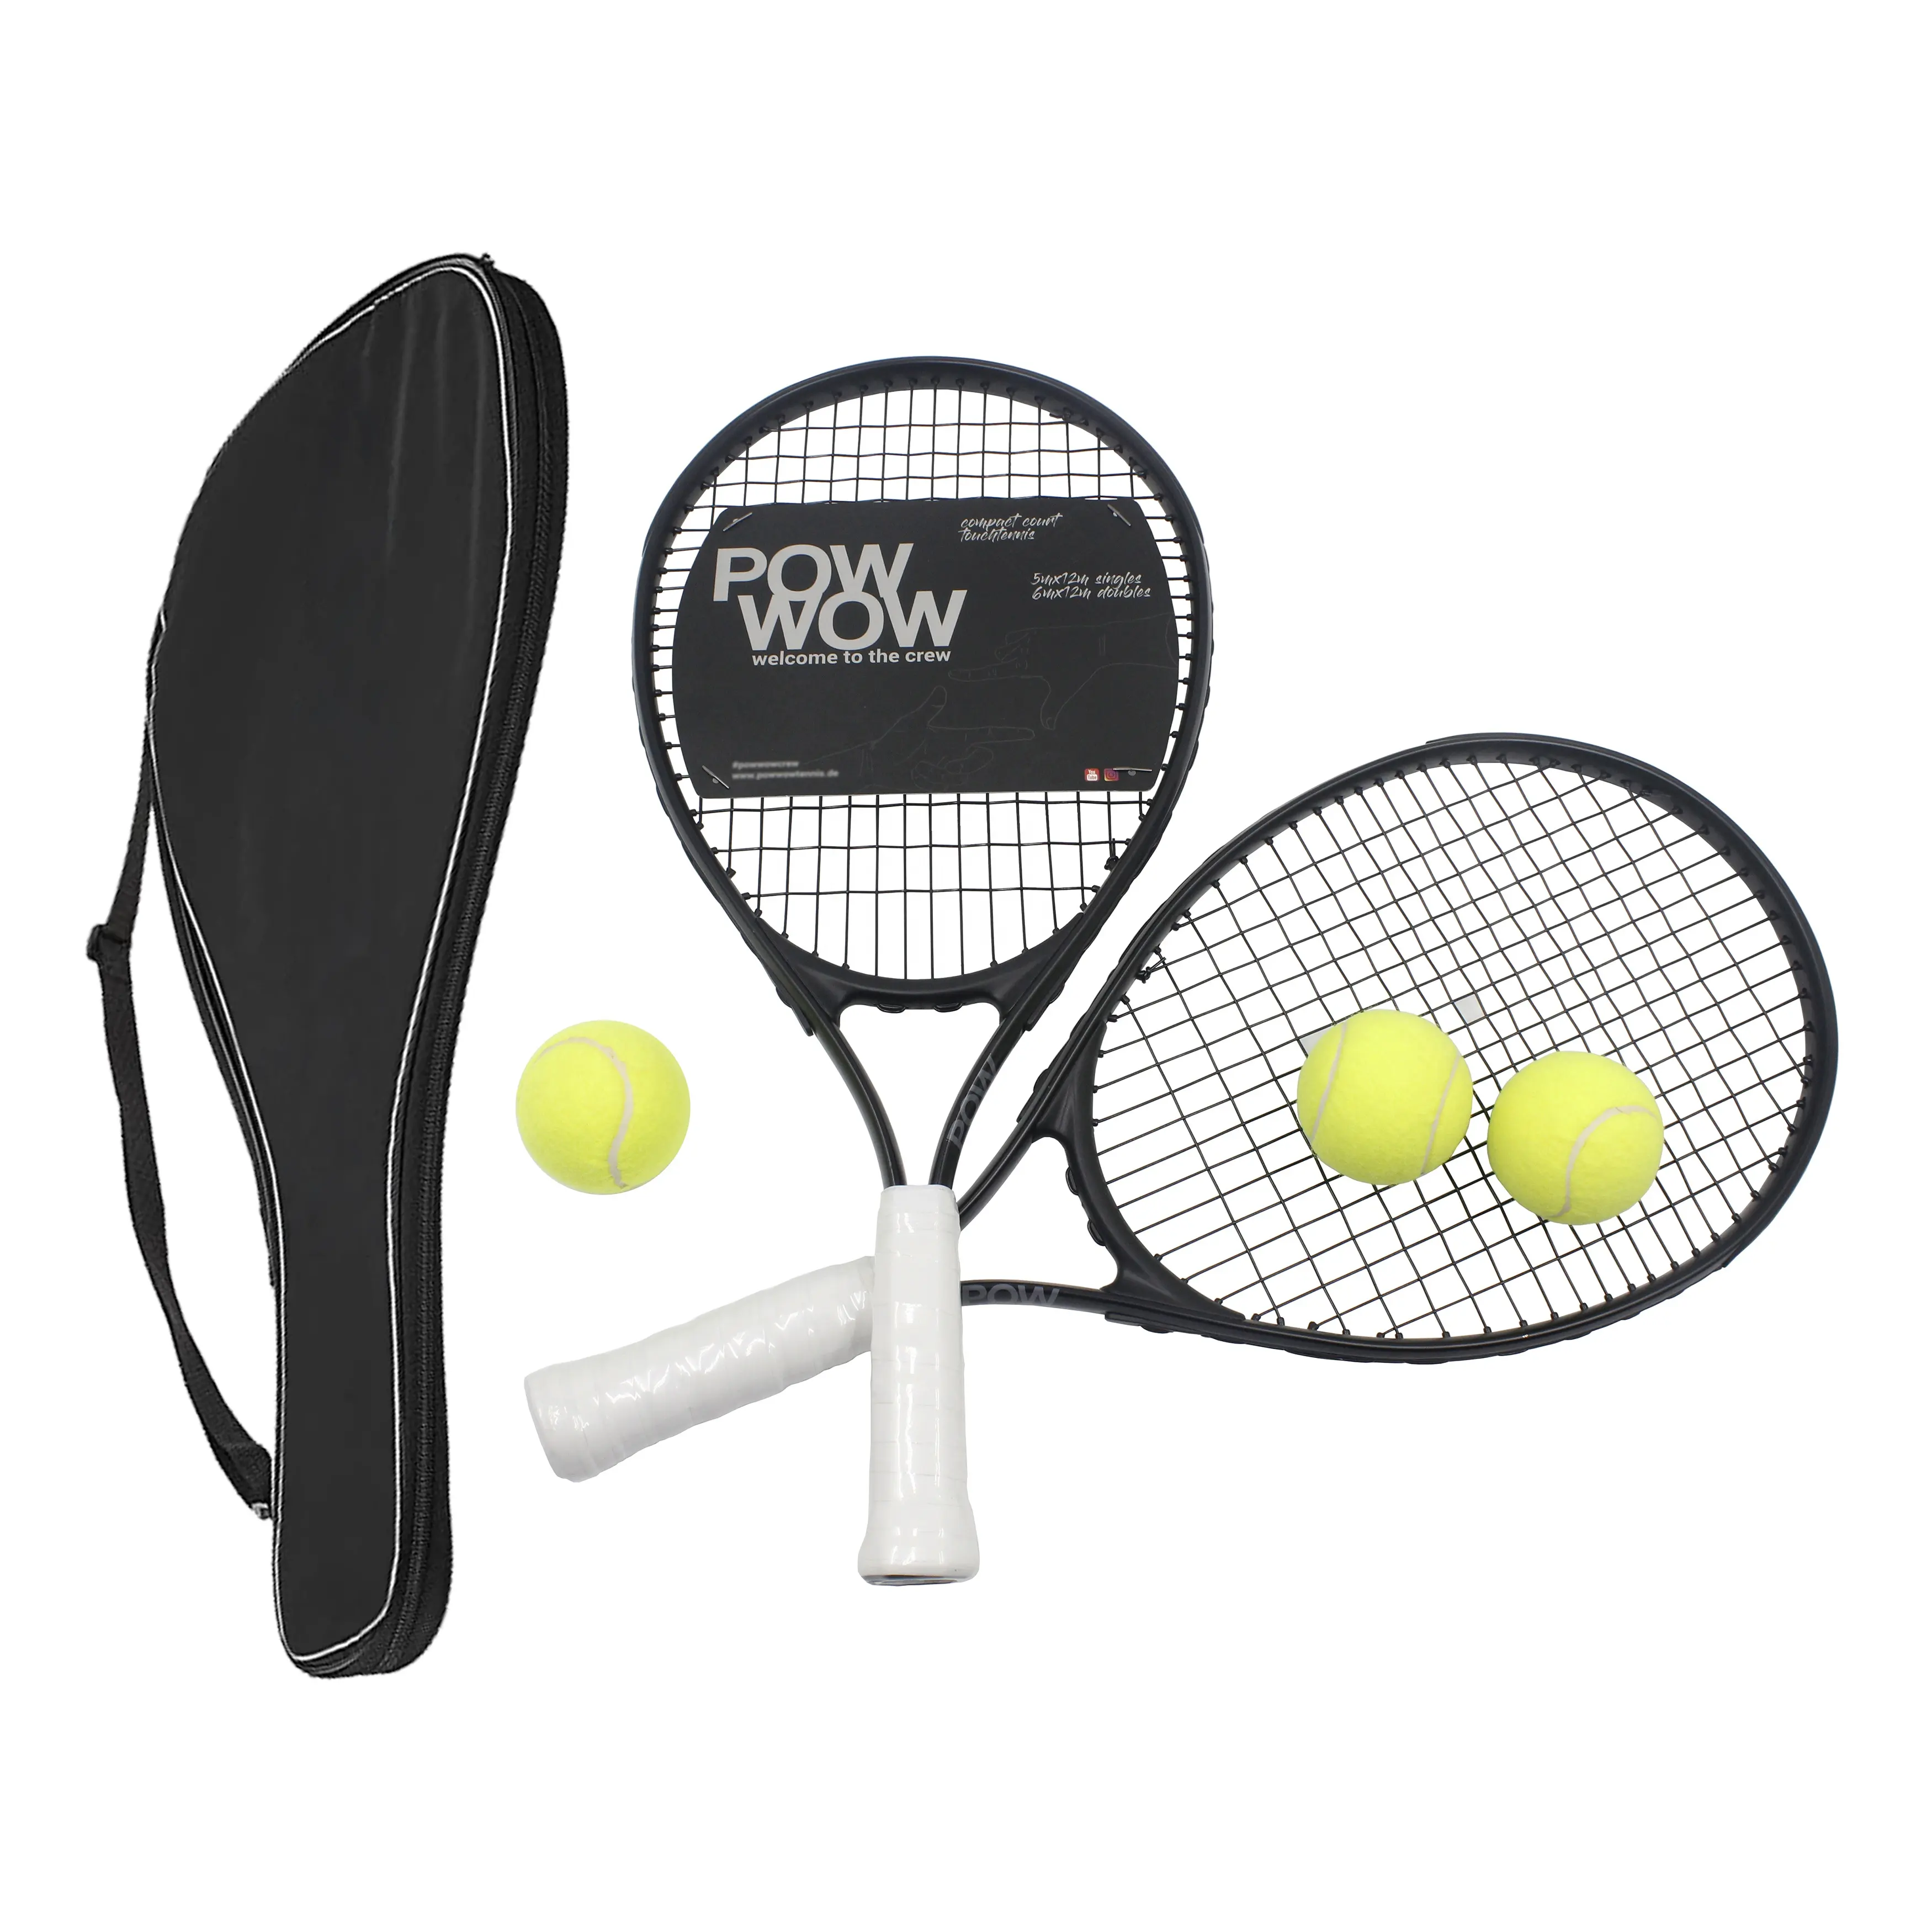 Tennis Rackets for Adults 27 inch Tennis Racquets - 2 Player Tennis Racket Set Carbon Fiber High Grade Aluminum